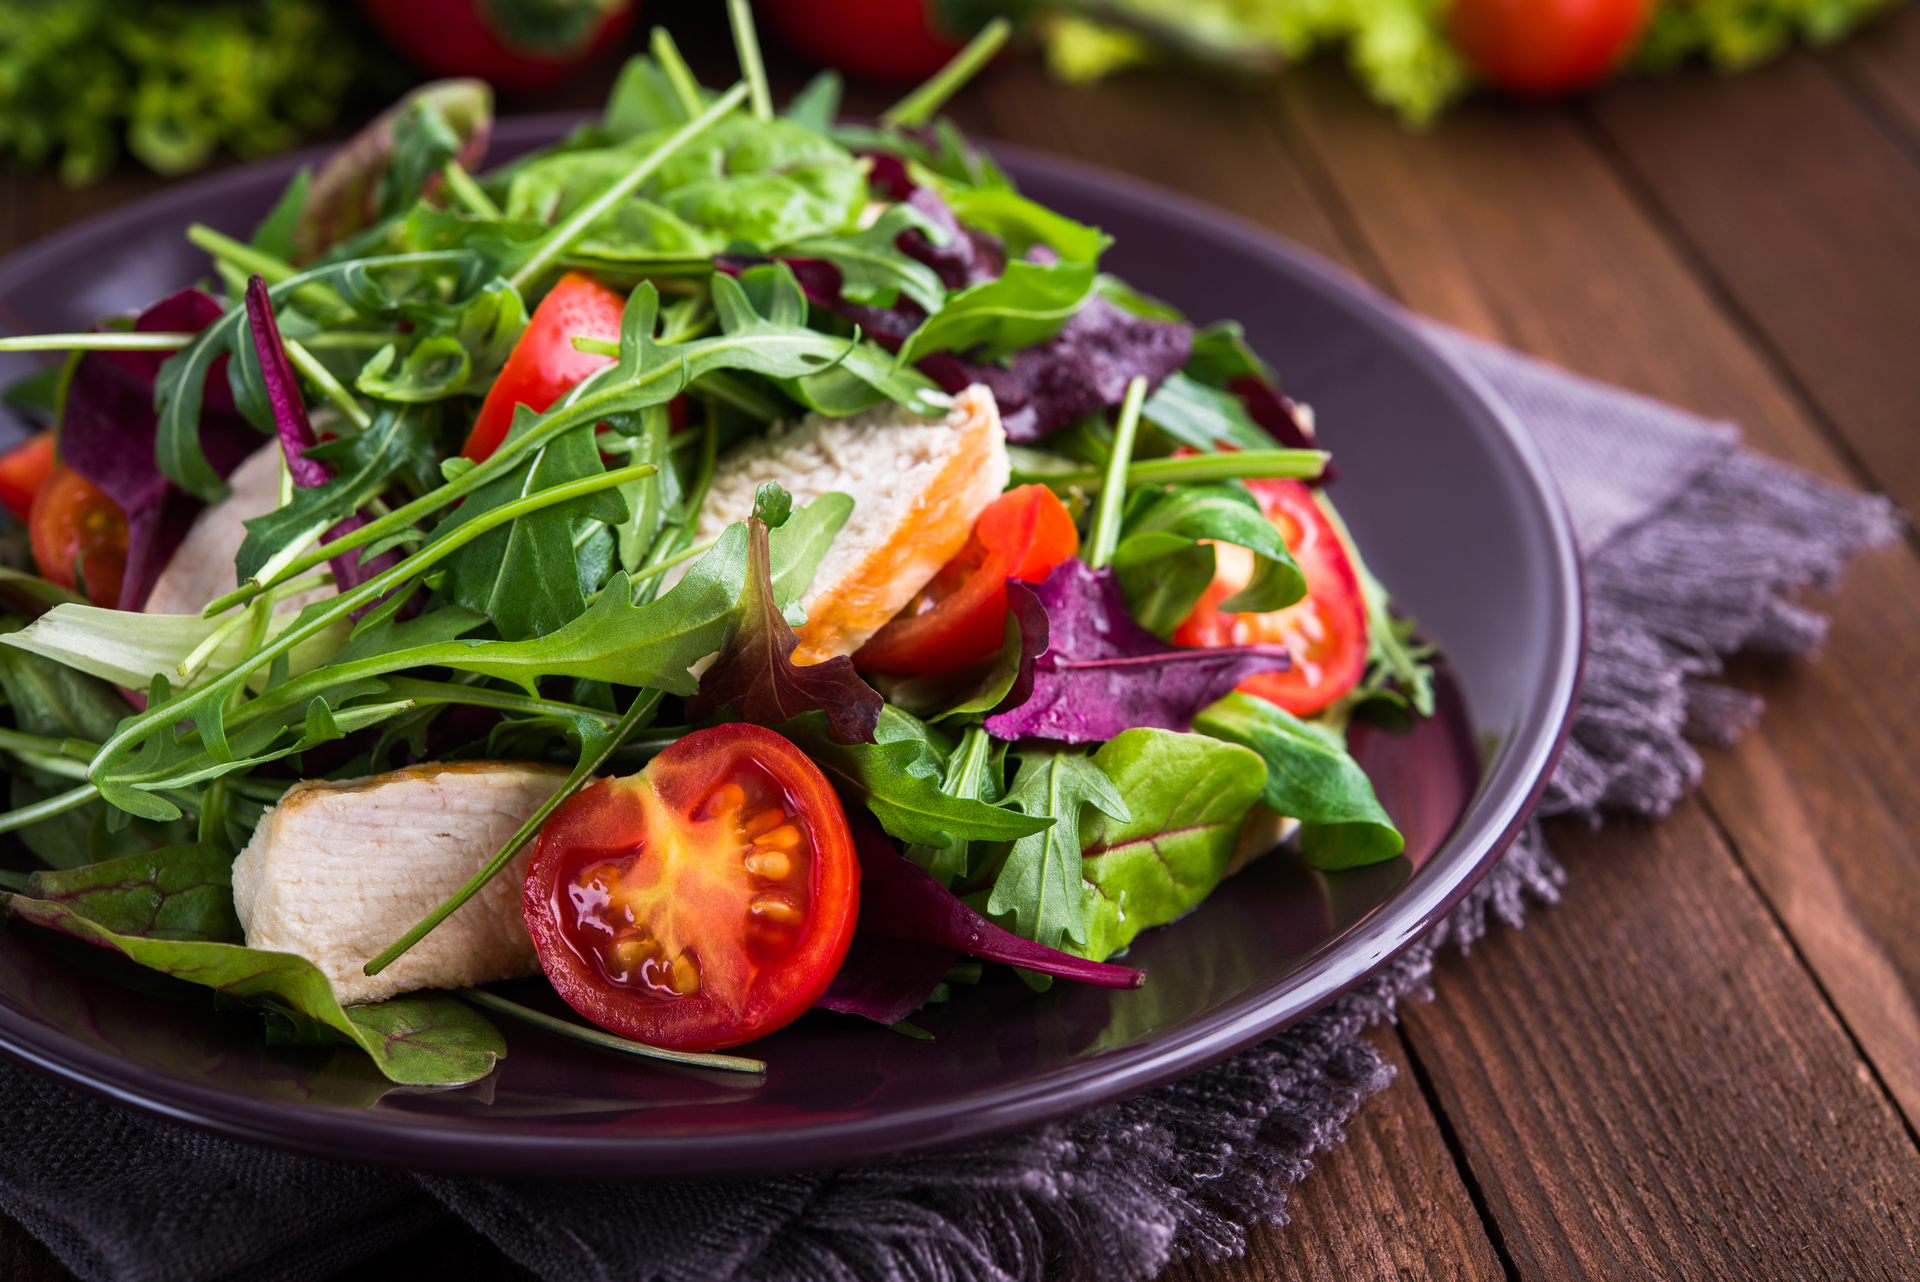 Download mobile wallpaper Food, Salad, Vegetable for free.